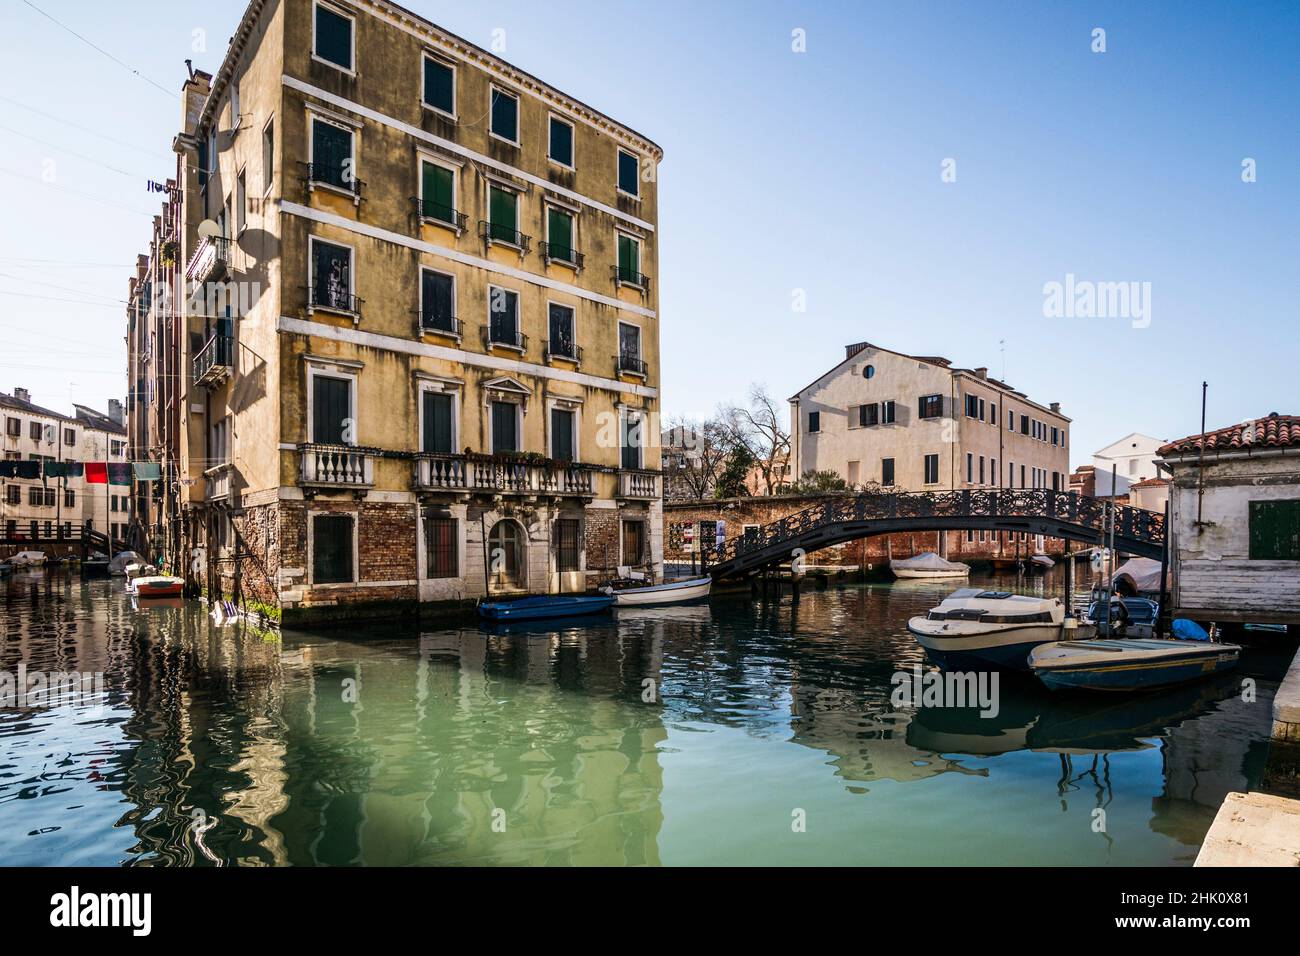 Canal et architecture adjacent au ghetto vénitien (ghetto juif).District de Cannaregio, Venise, Vénétie, Italie. Banque D'Images